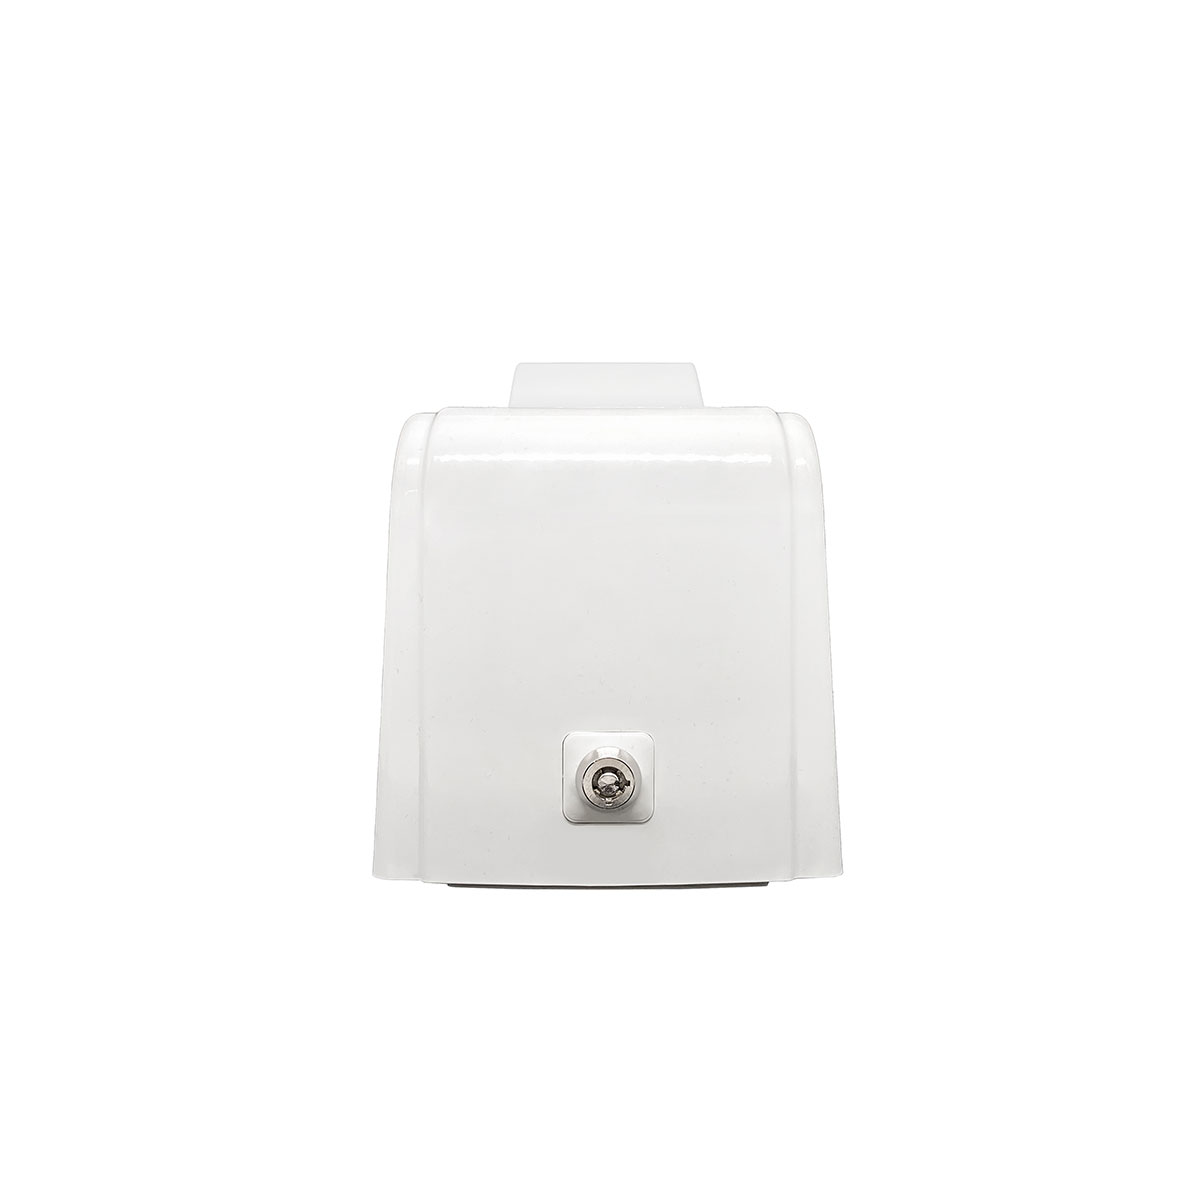 Дозатор для пены X12 нажимной 1,2 л БИЗНЕС, корпус белый, стекло матовое белое, кнопка белая фото 3